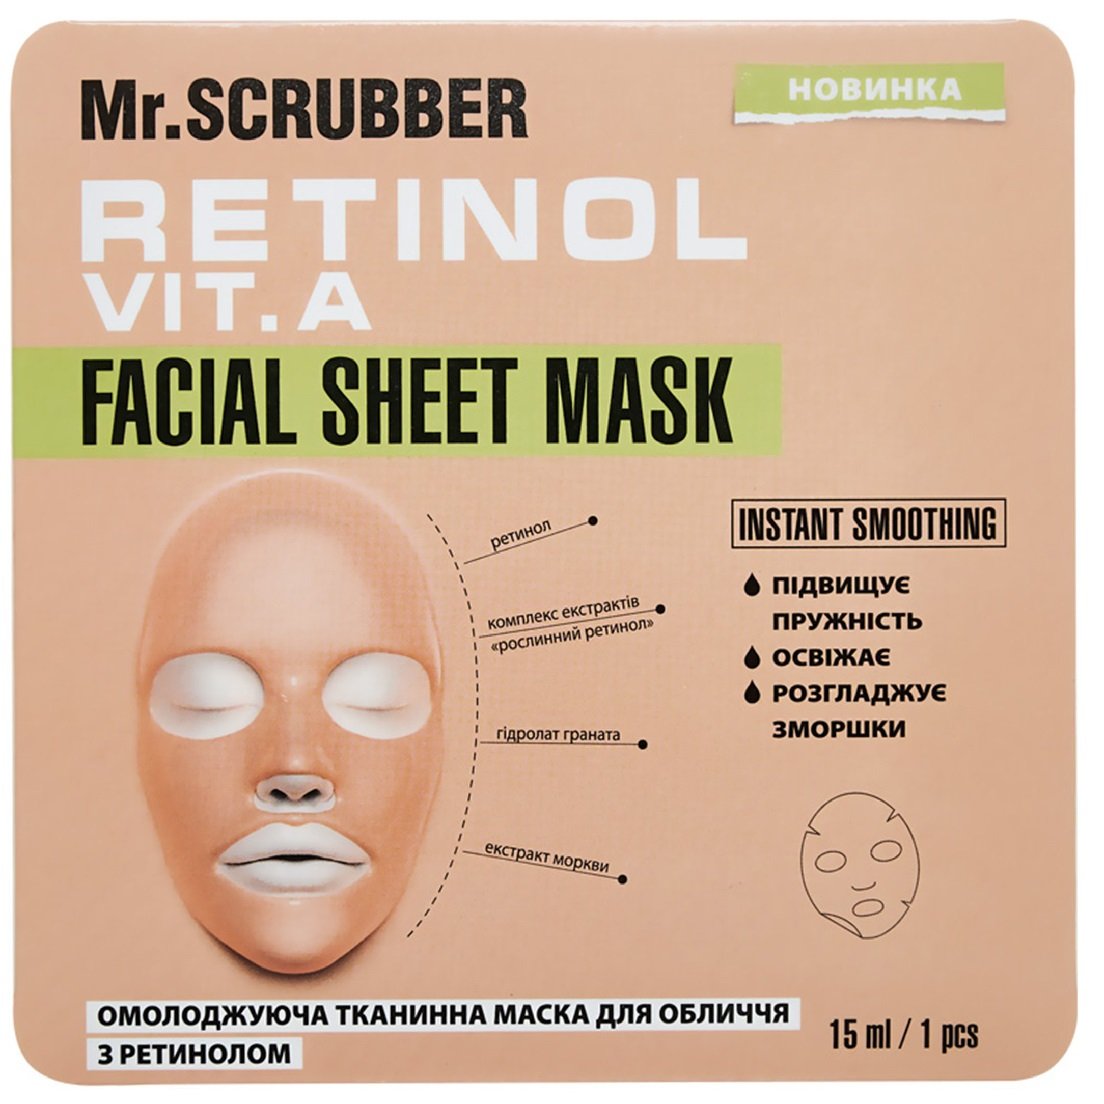 Омолаживающая маска для лица Mr.Scrubber Retinol Facial Sheet Mask, с ретинолом, 15 мл - фото 1